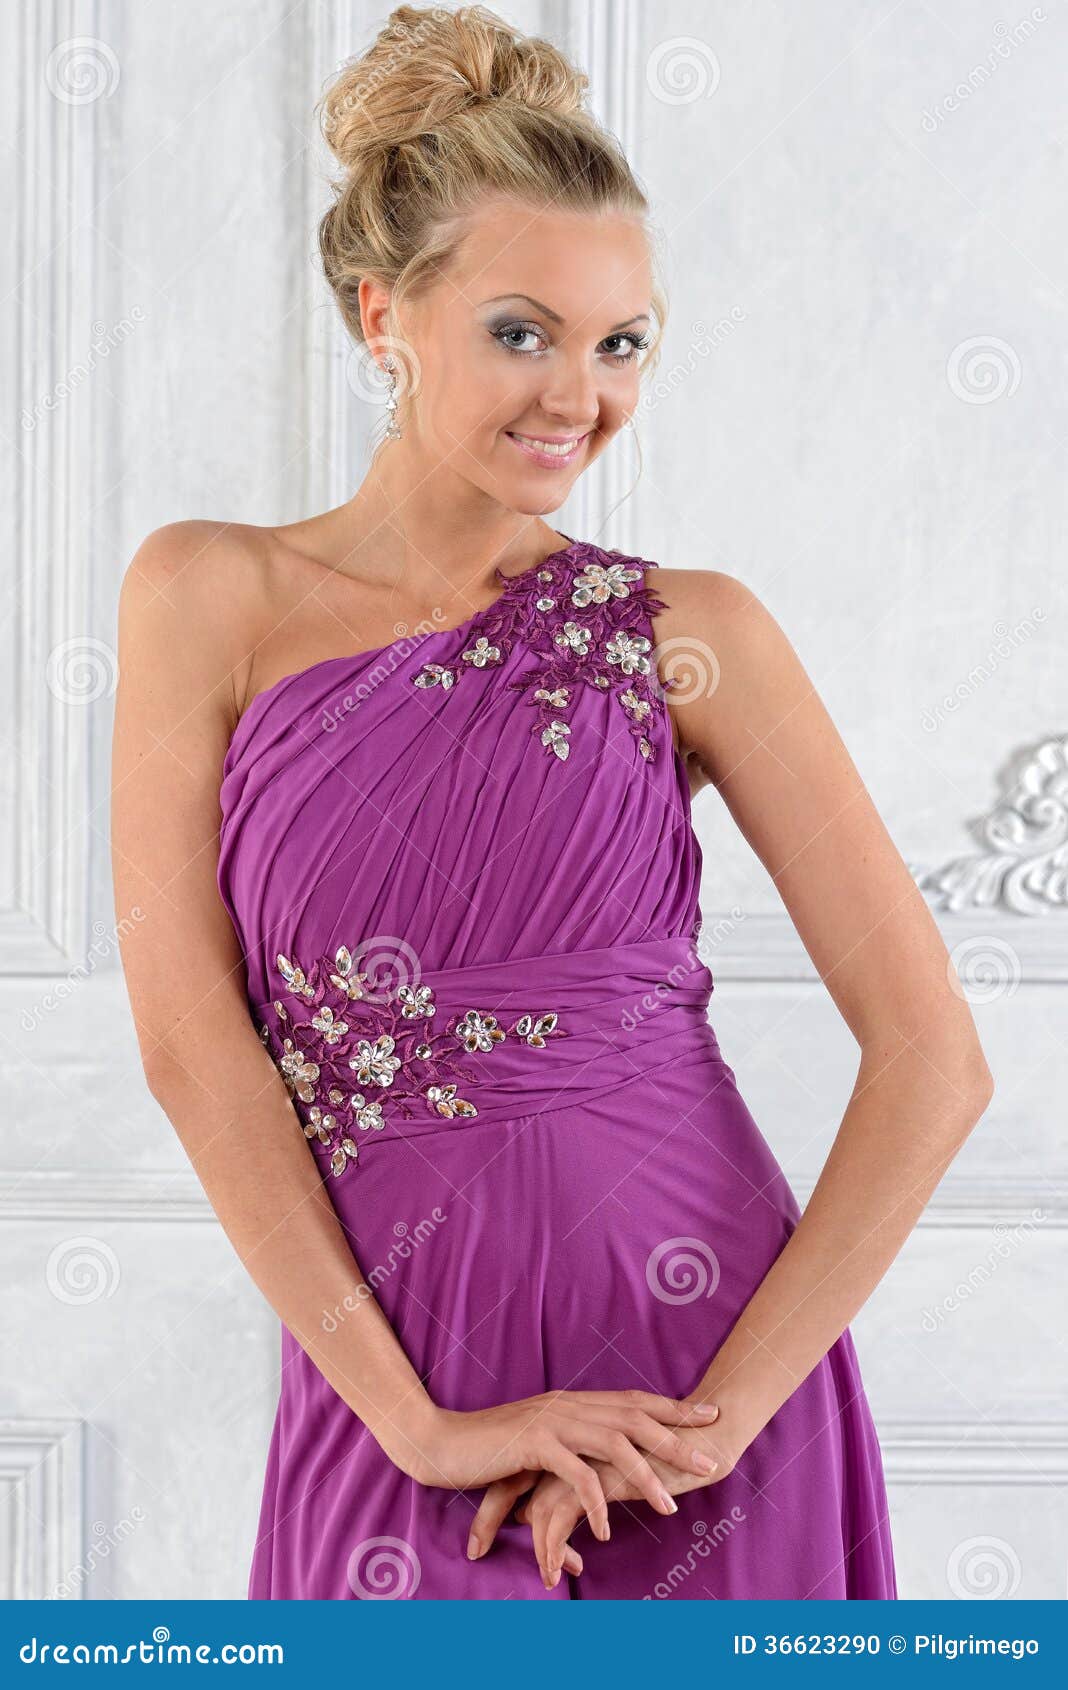 高级感的紫色系礼服，穿起来神秘优雅，衬托绝美气质